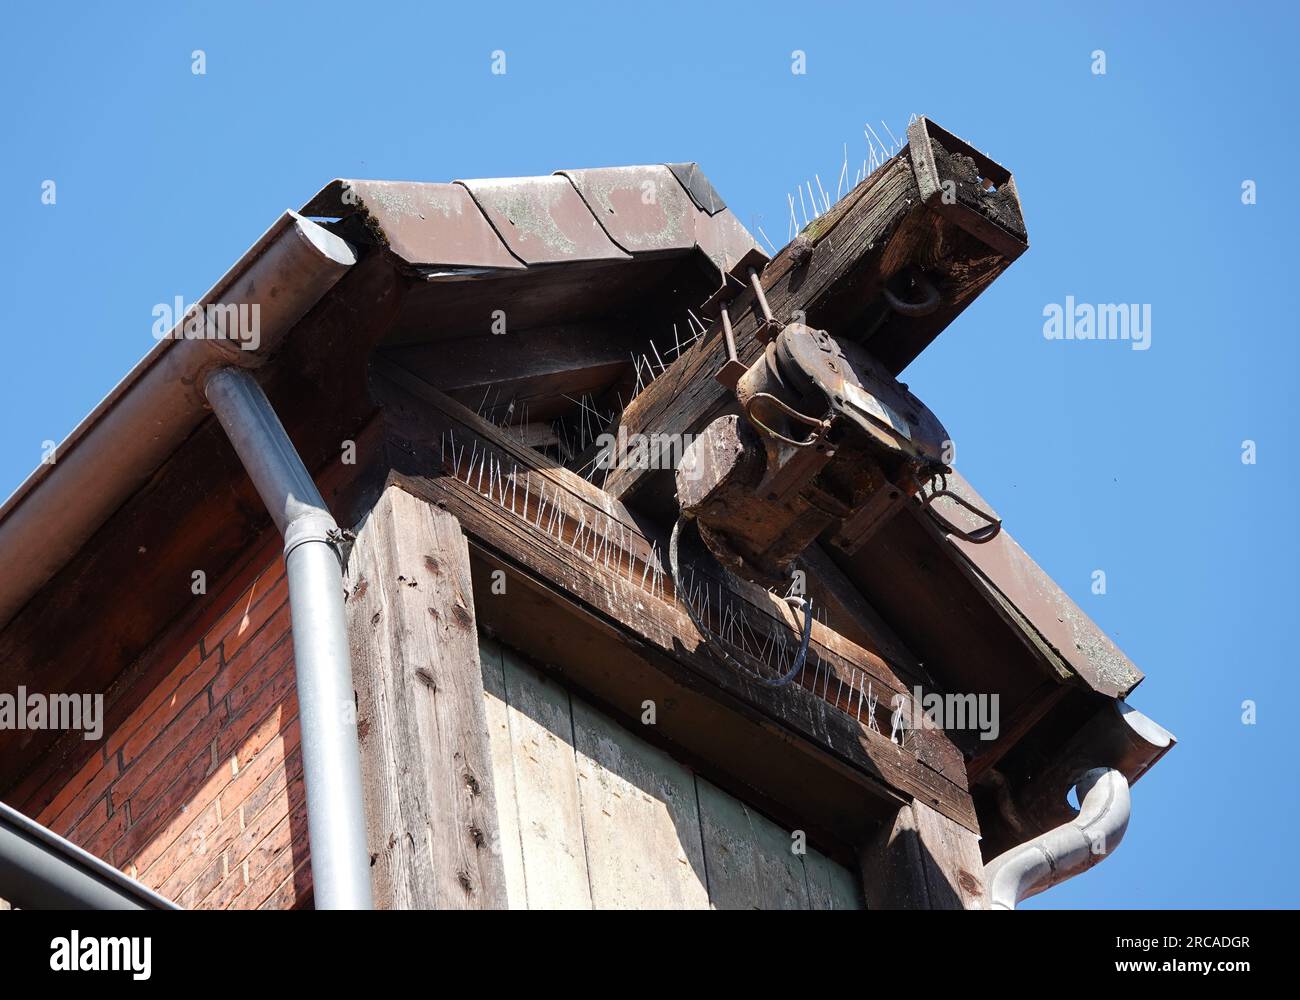 La cresta di un'antica casa con una puleggia per sollevare le cose. Tutto è fissato contro i piccioni con perni. Foto Stock